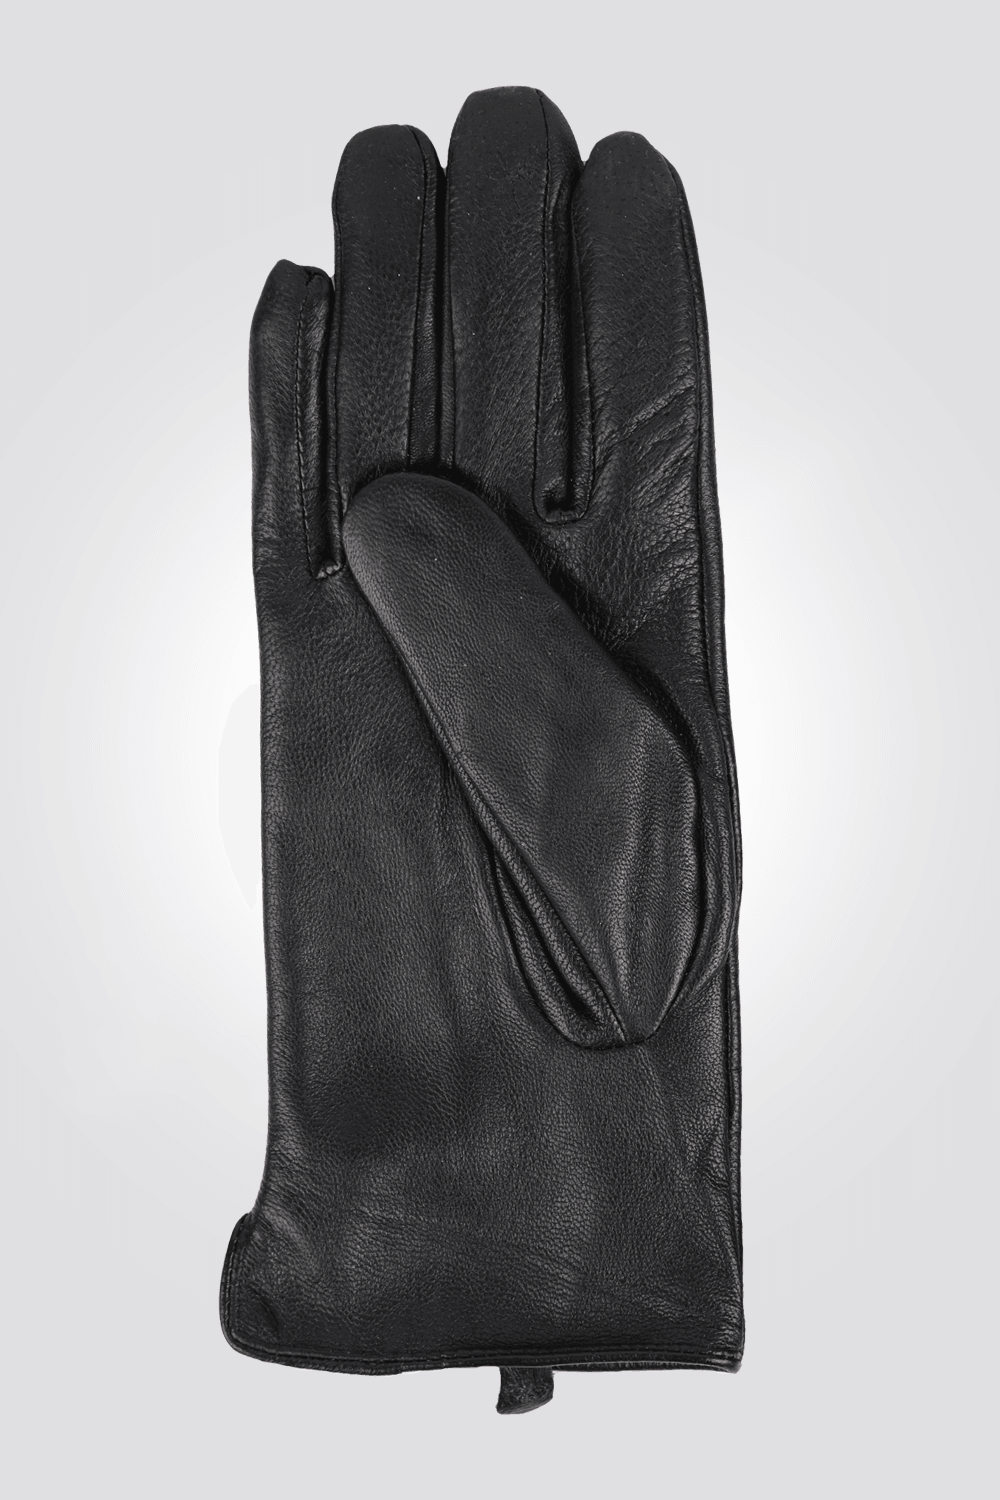 KENNETH COLE - כפפות עור לנשים בצבע שחור - MASHBIR//365